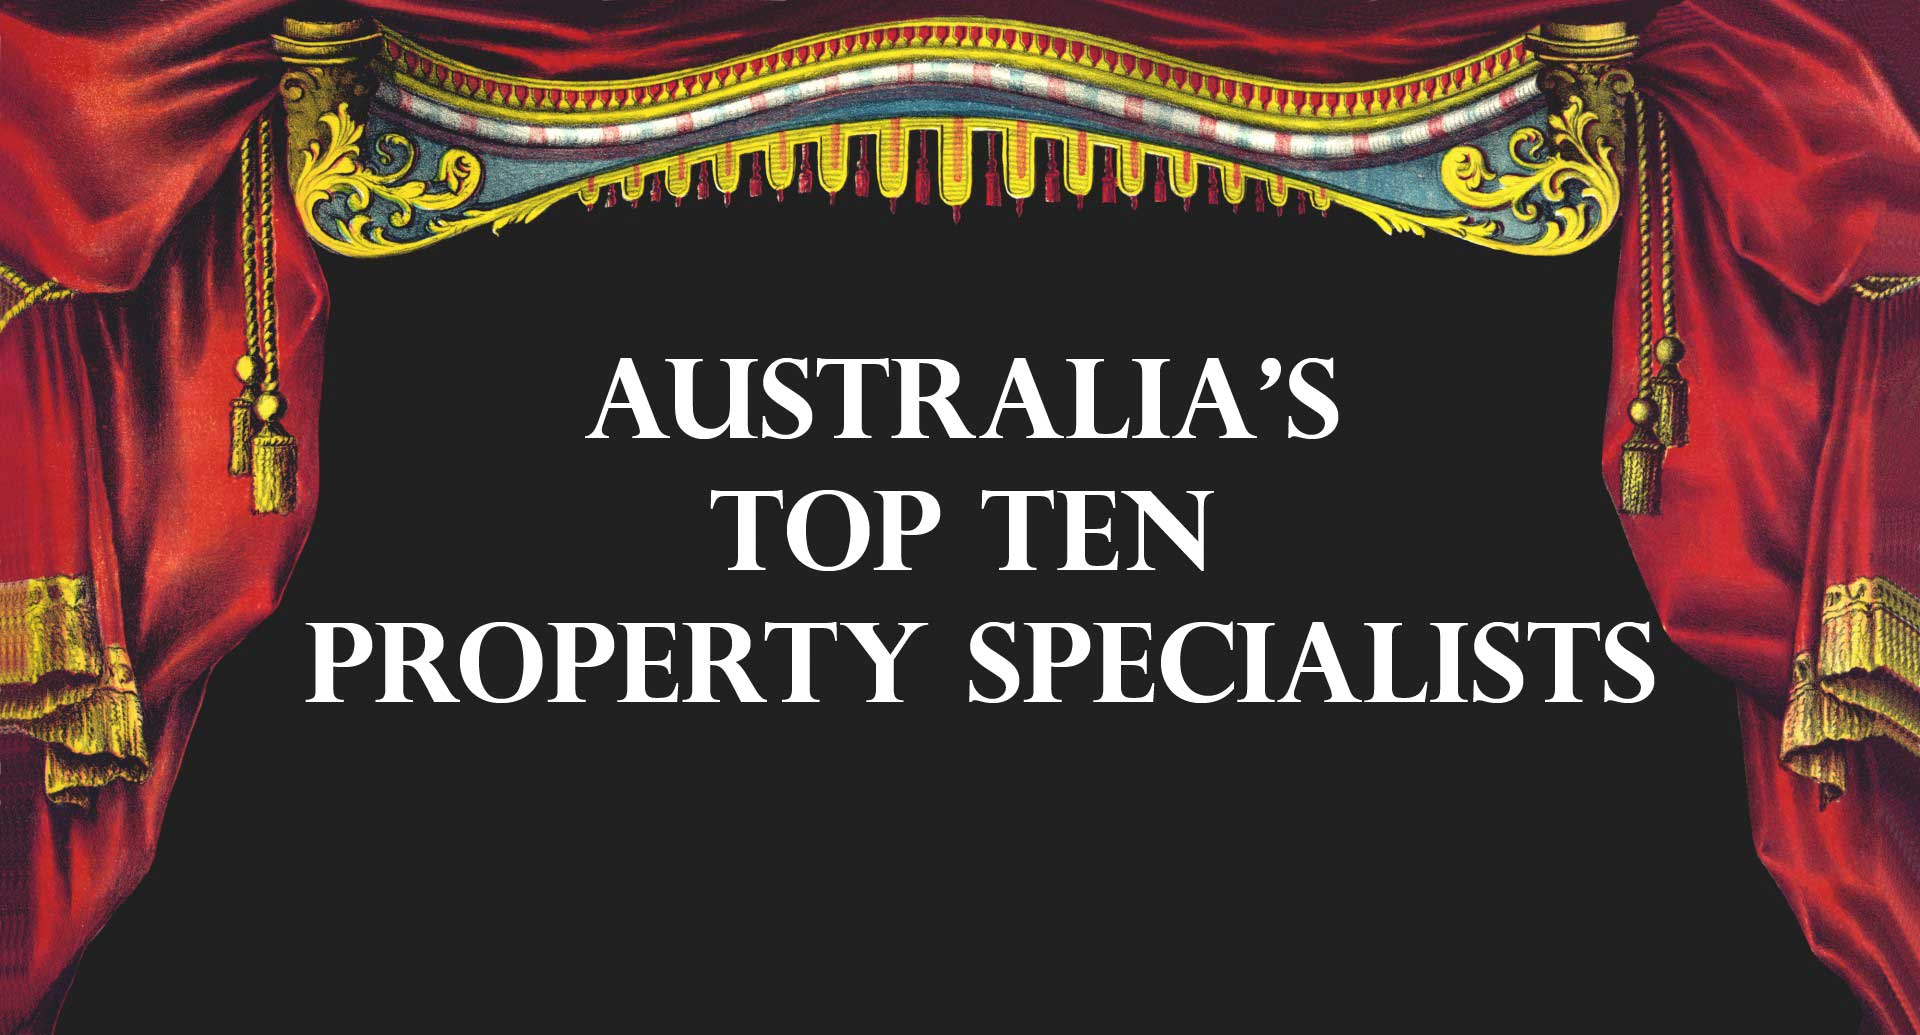 Australia’s Top Ten Property Specialists 2018